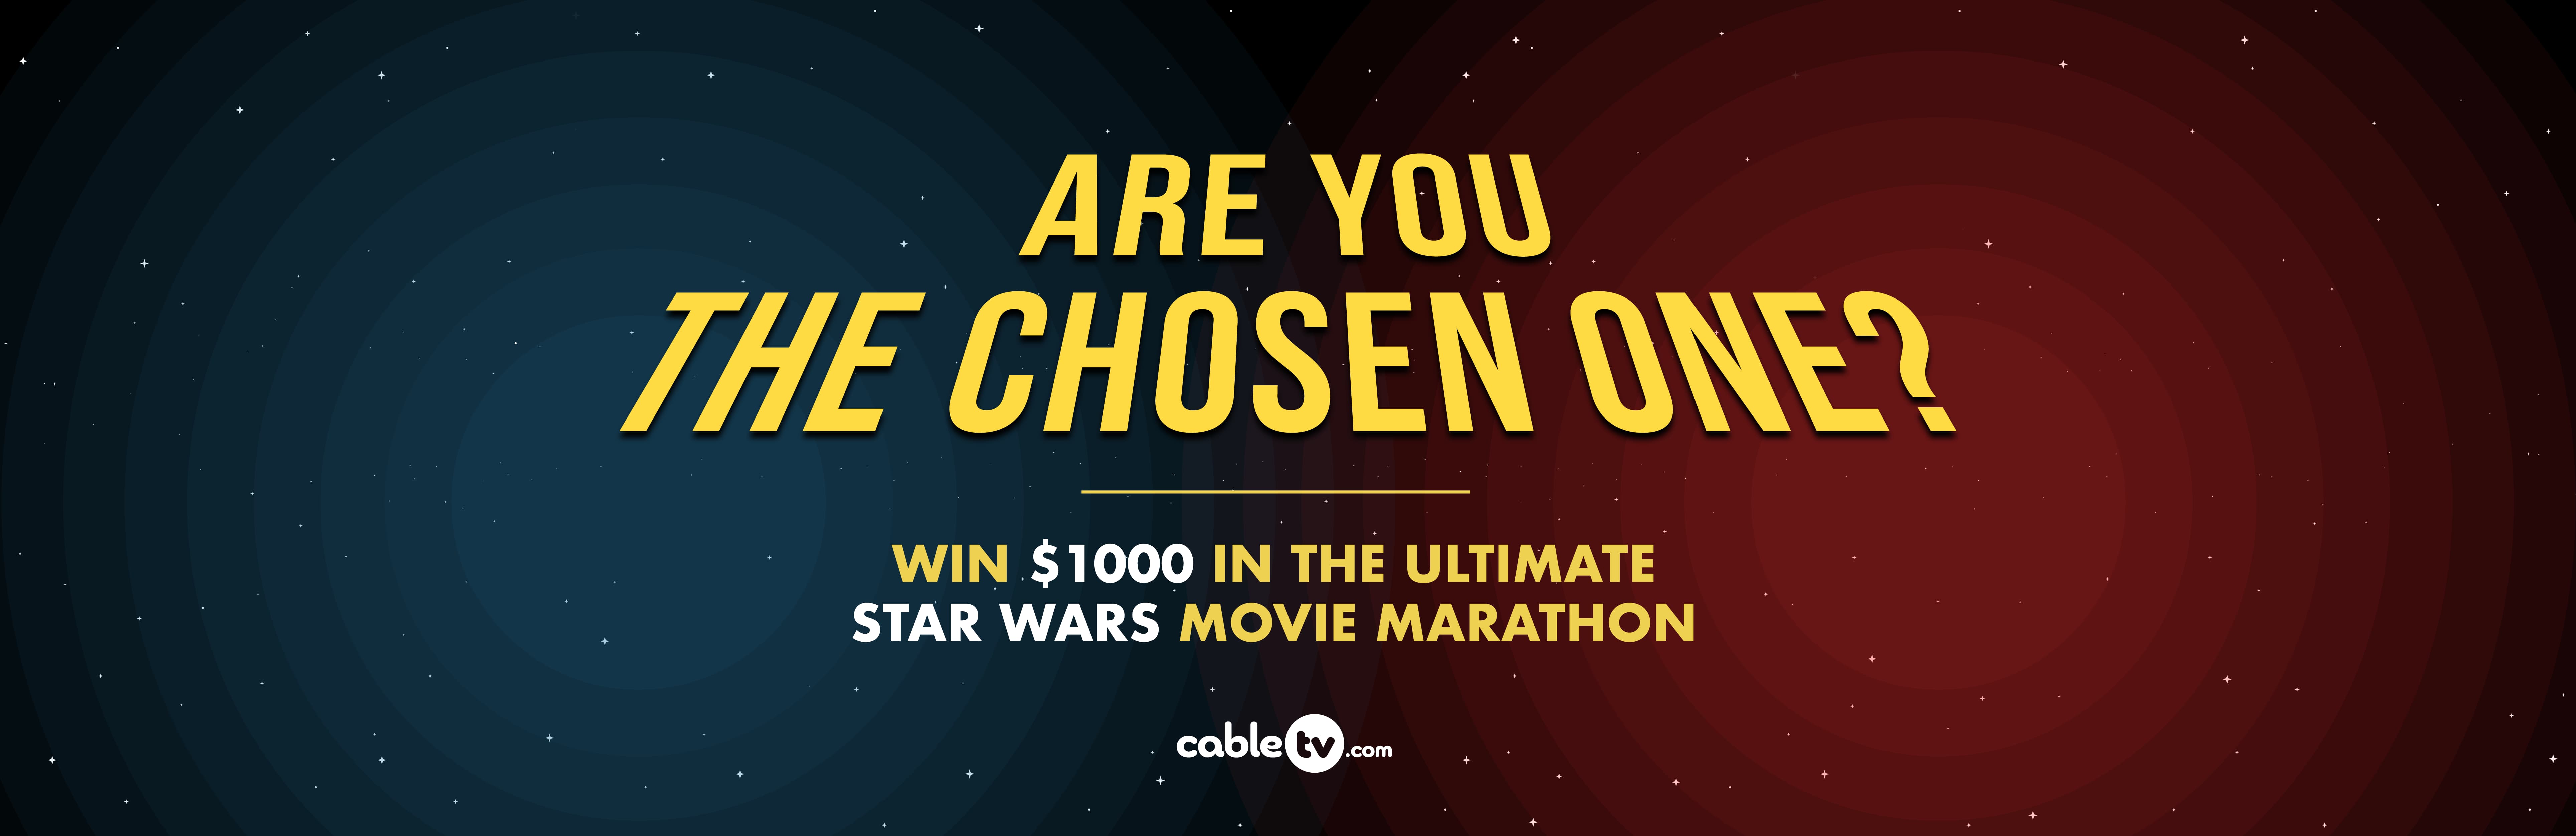 Star Wars Movie Marathon